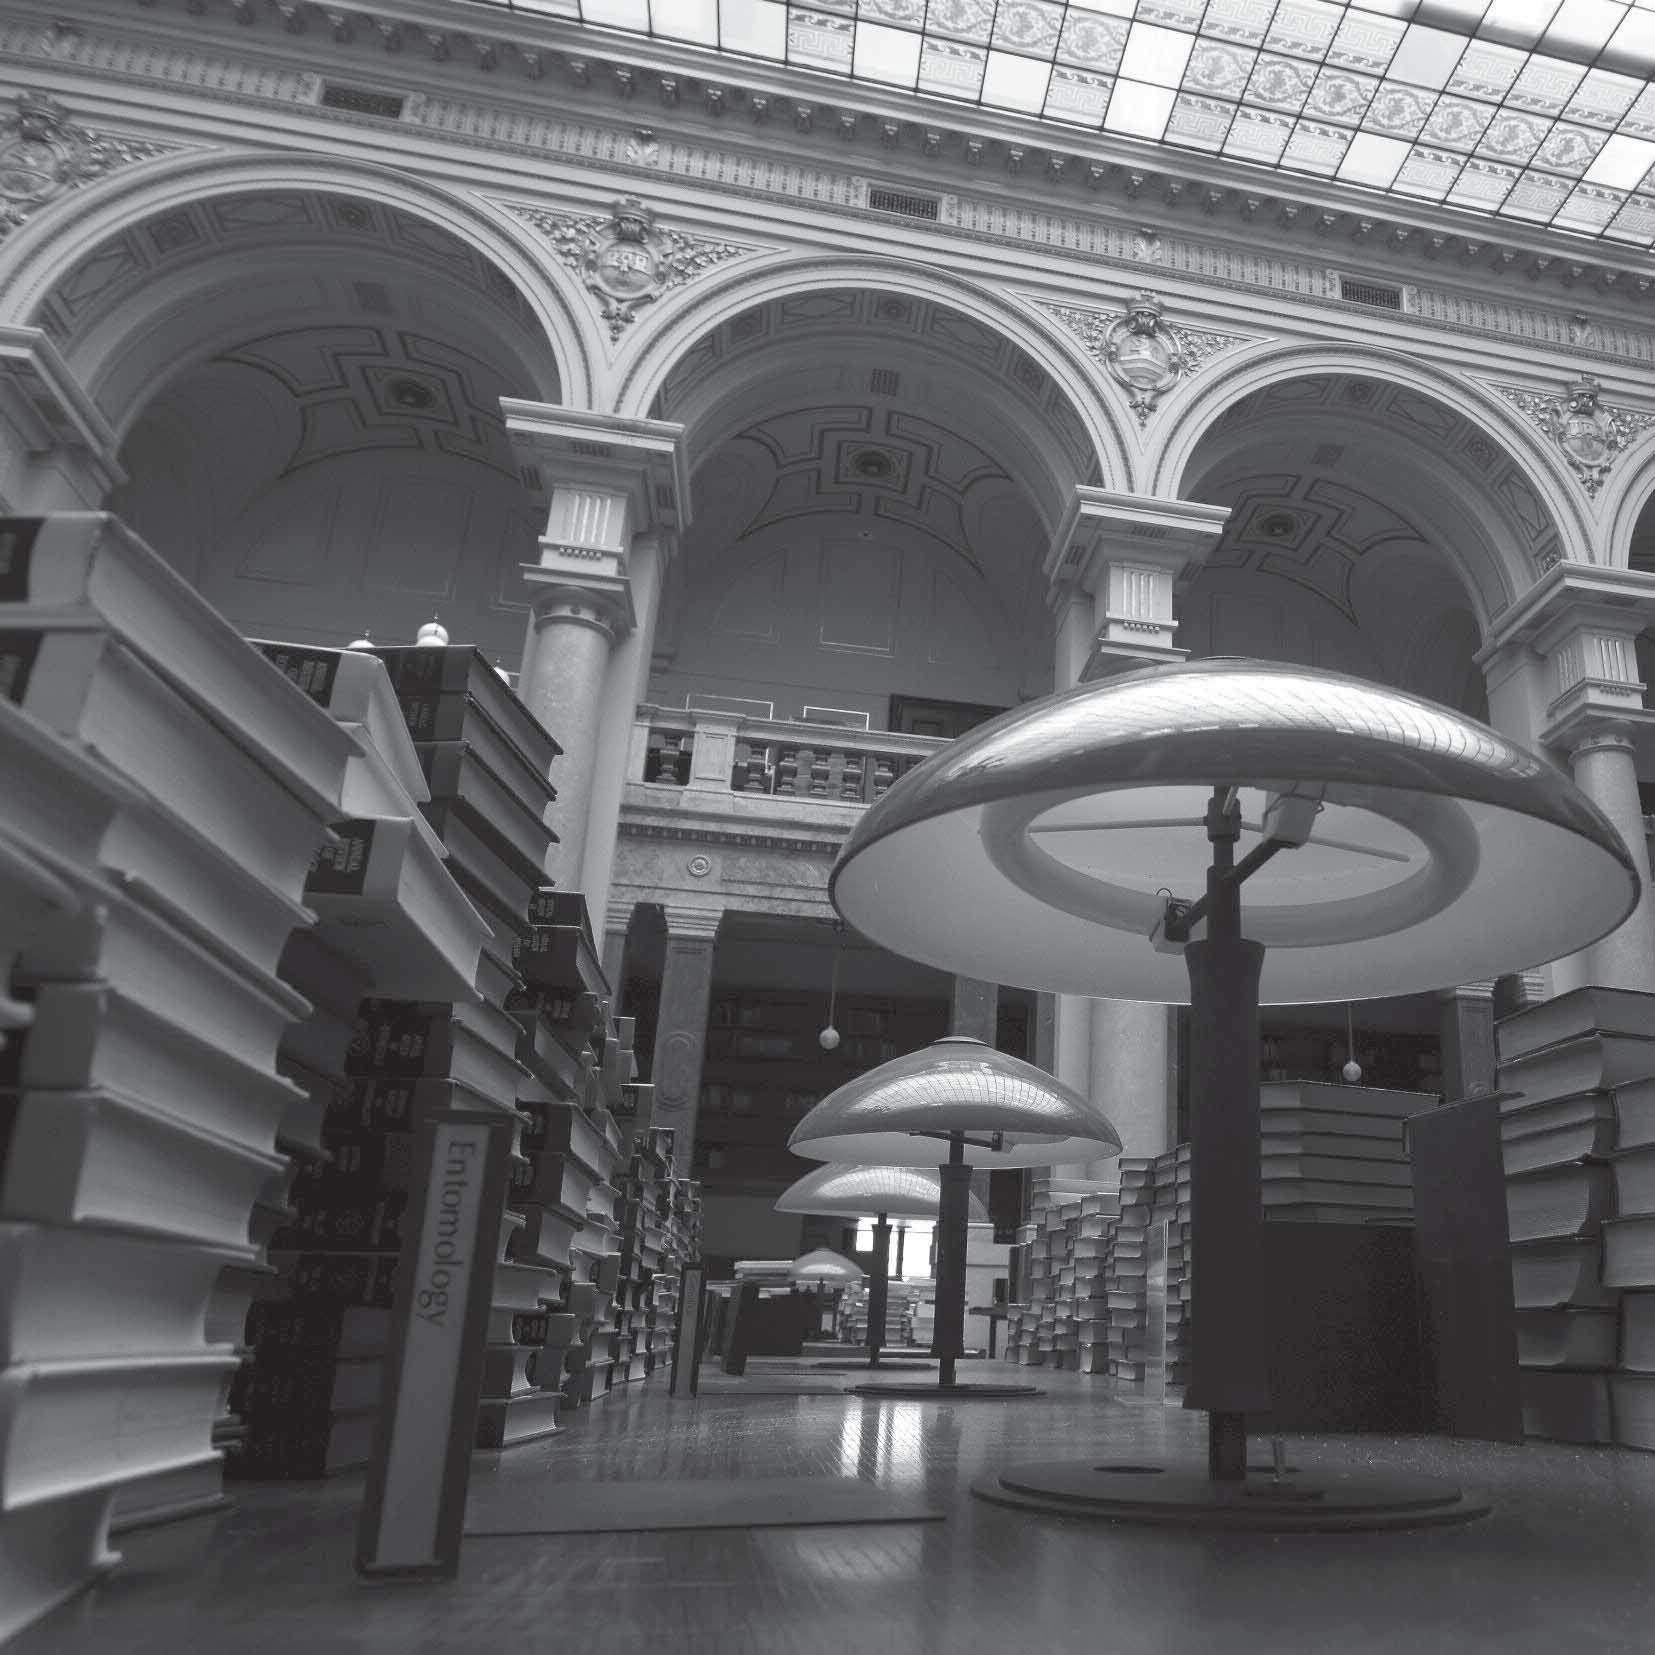 Protože je převážná část fondu knihovny umístěna v depozitáři mimo Prahu, nebyla ničivé síle výbuchu vůbec vystavena. I přesto ale bylo nutné od skla a prachu očistit téměř 22.500 knih a 15.